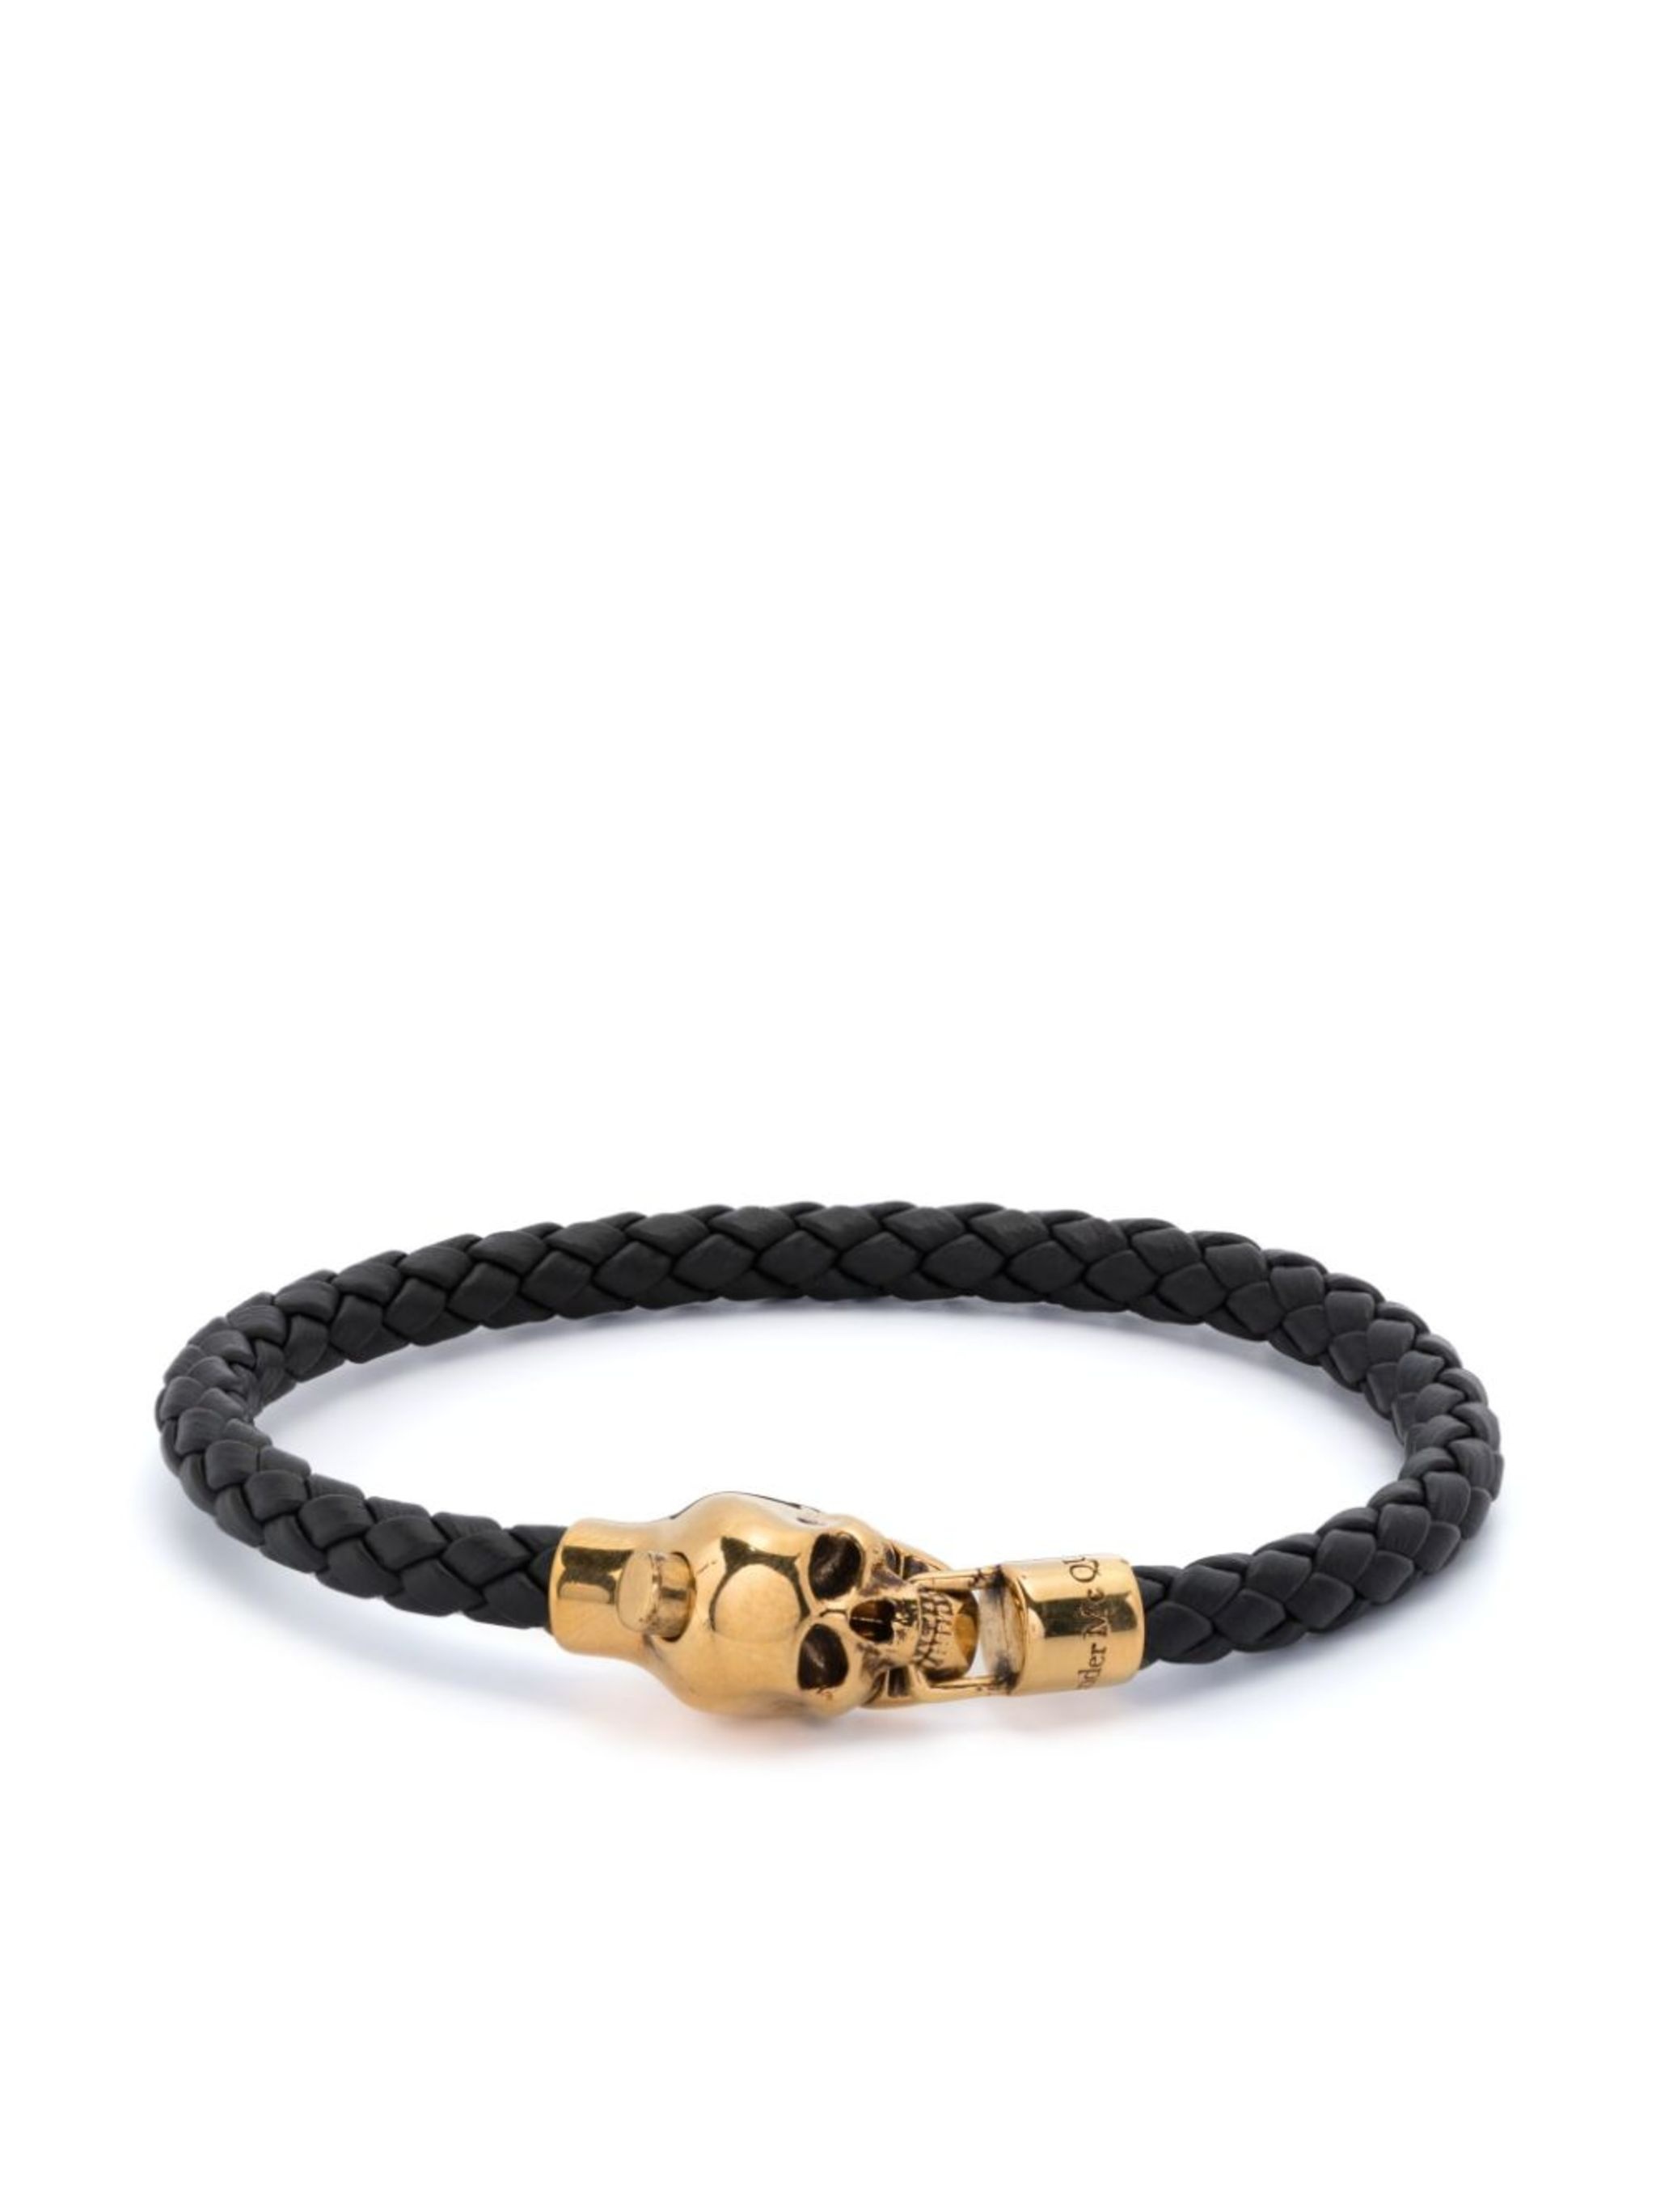 skull braided leather bracelet - 1